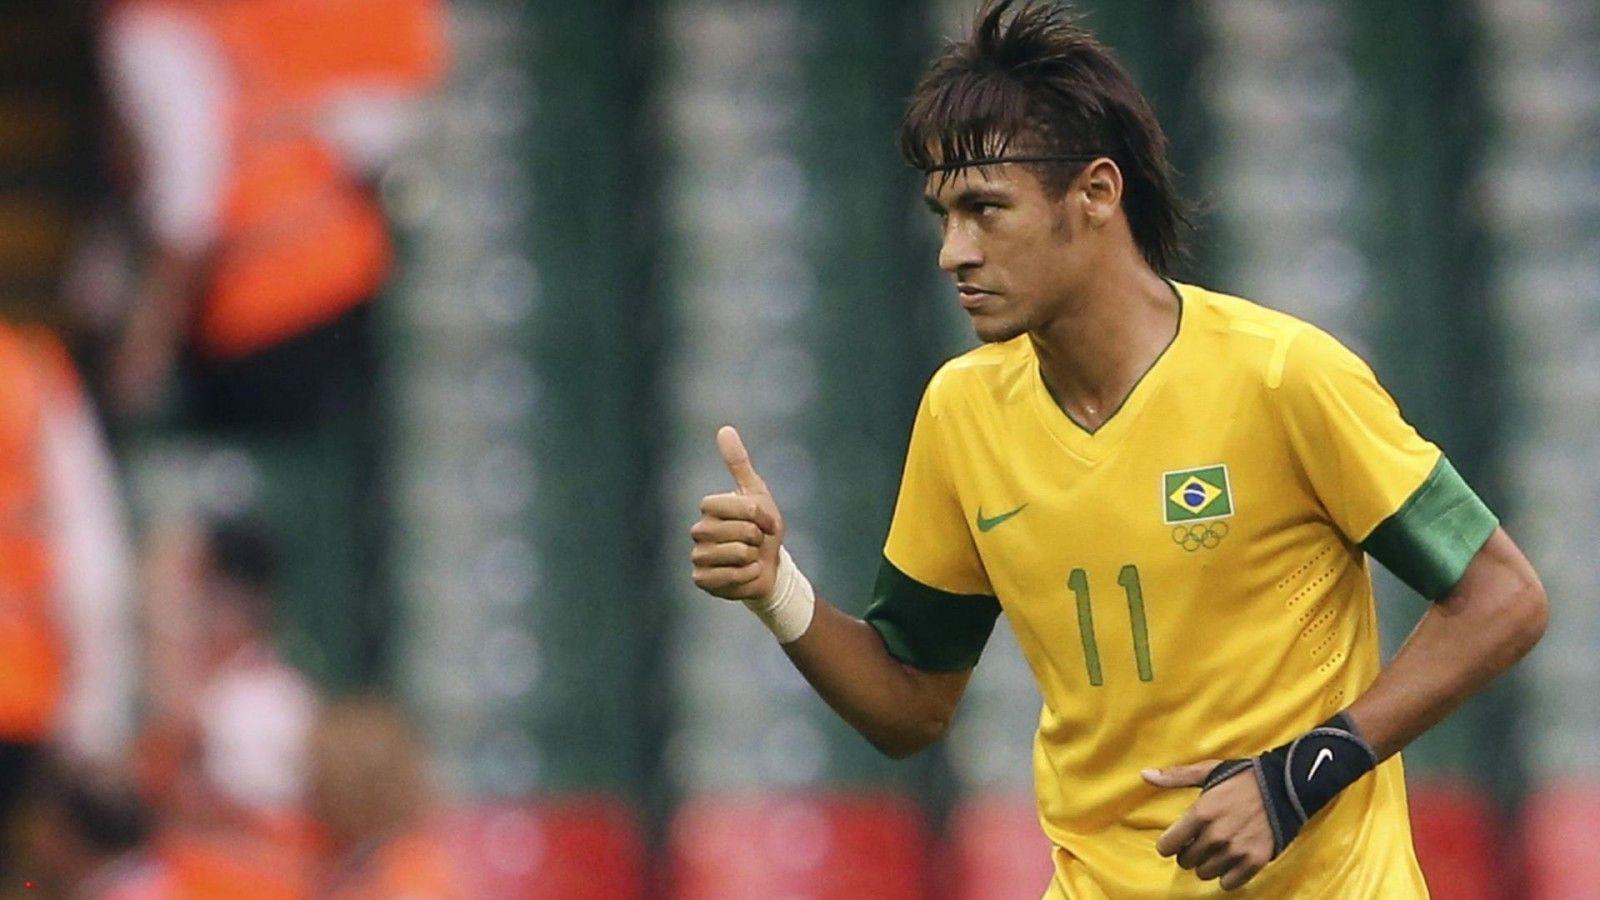 Neymar brazil football player. Widescreen and Full HD Wallpaper